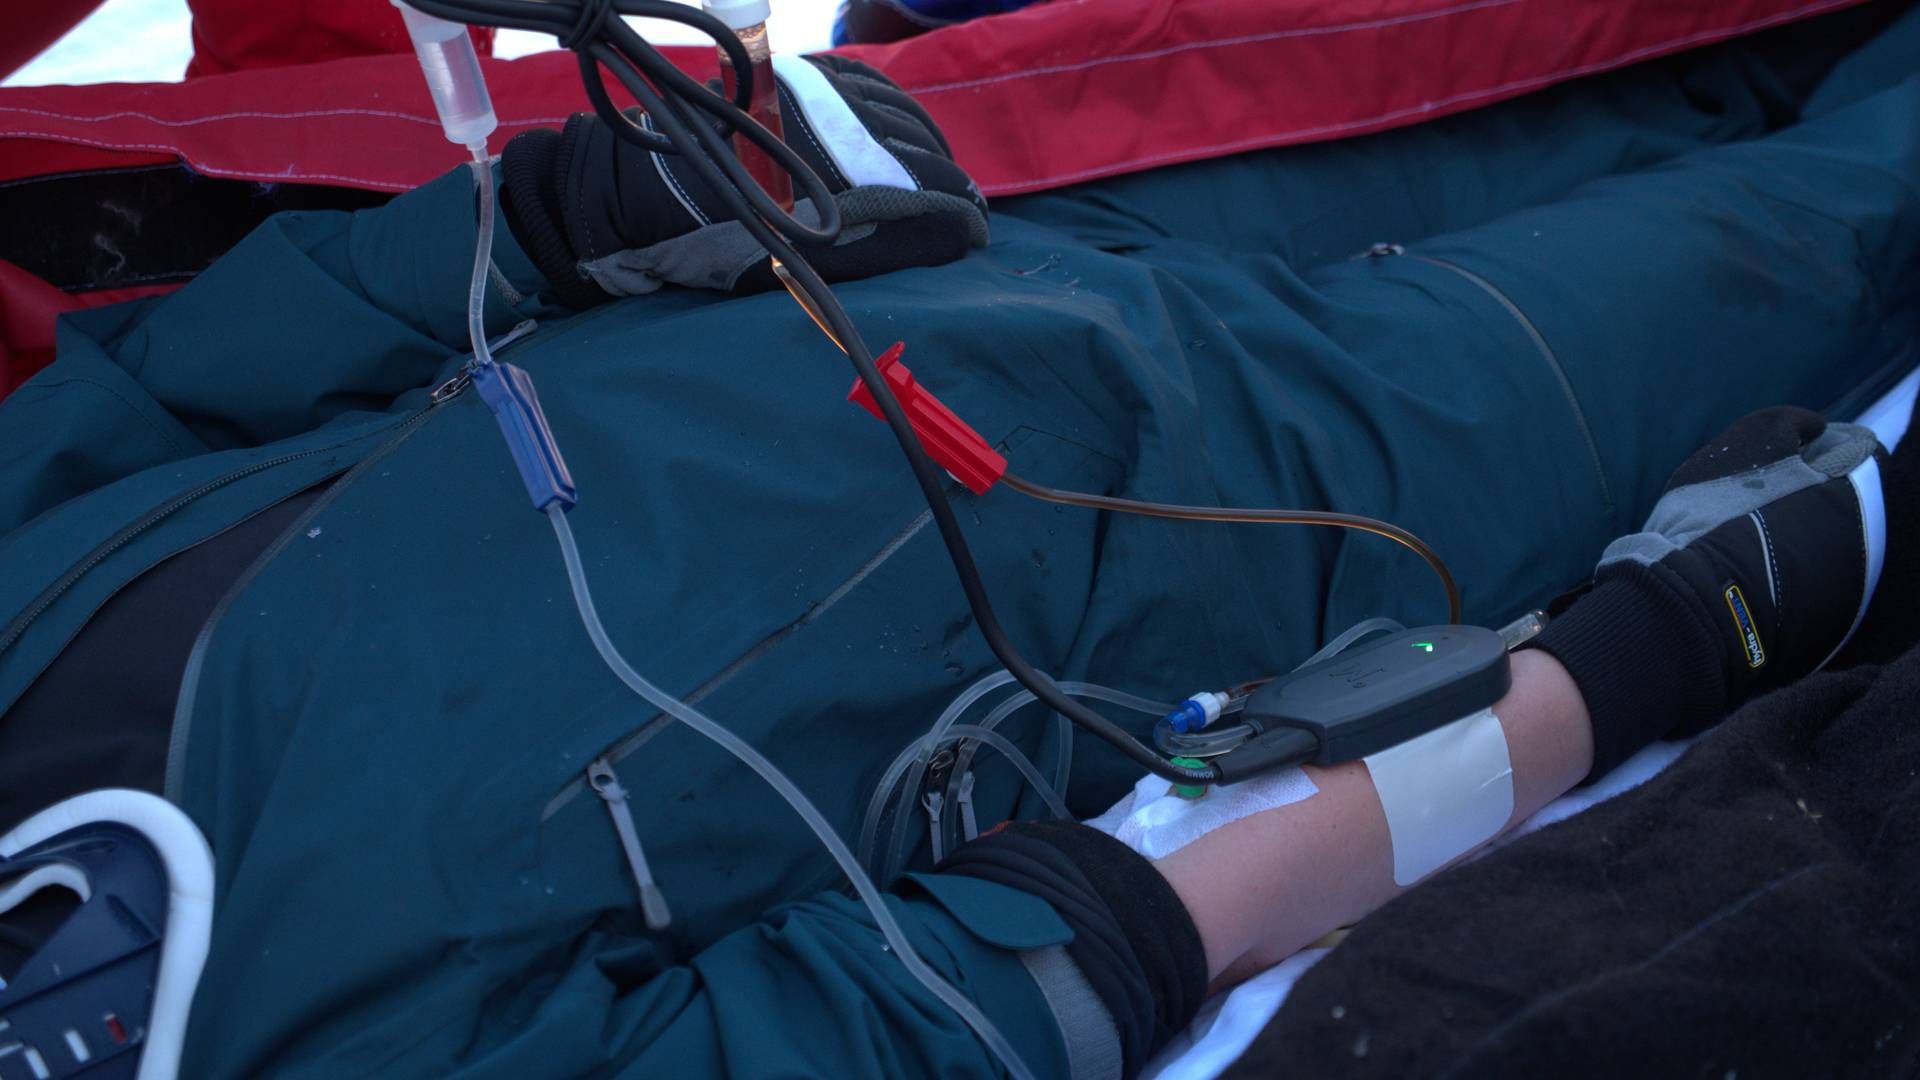 Mequs blodvarmer-system består af en varmer, et batteri og en ledning. | Foto: PR / Mequ